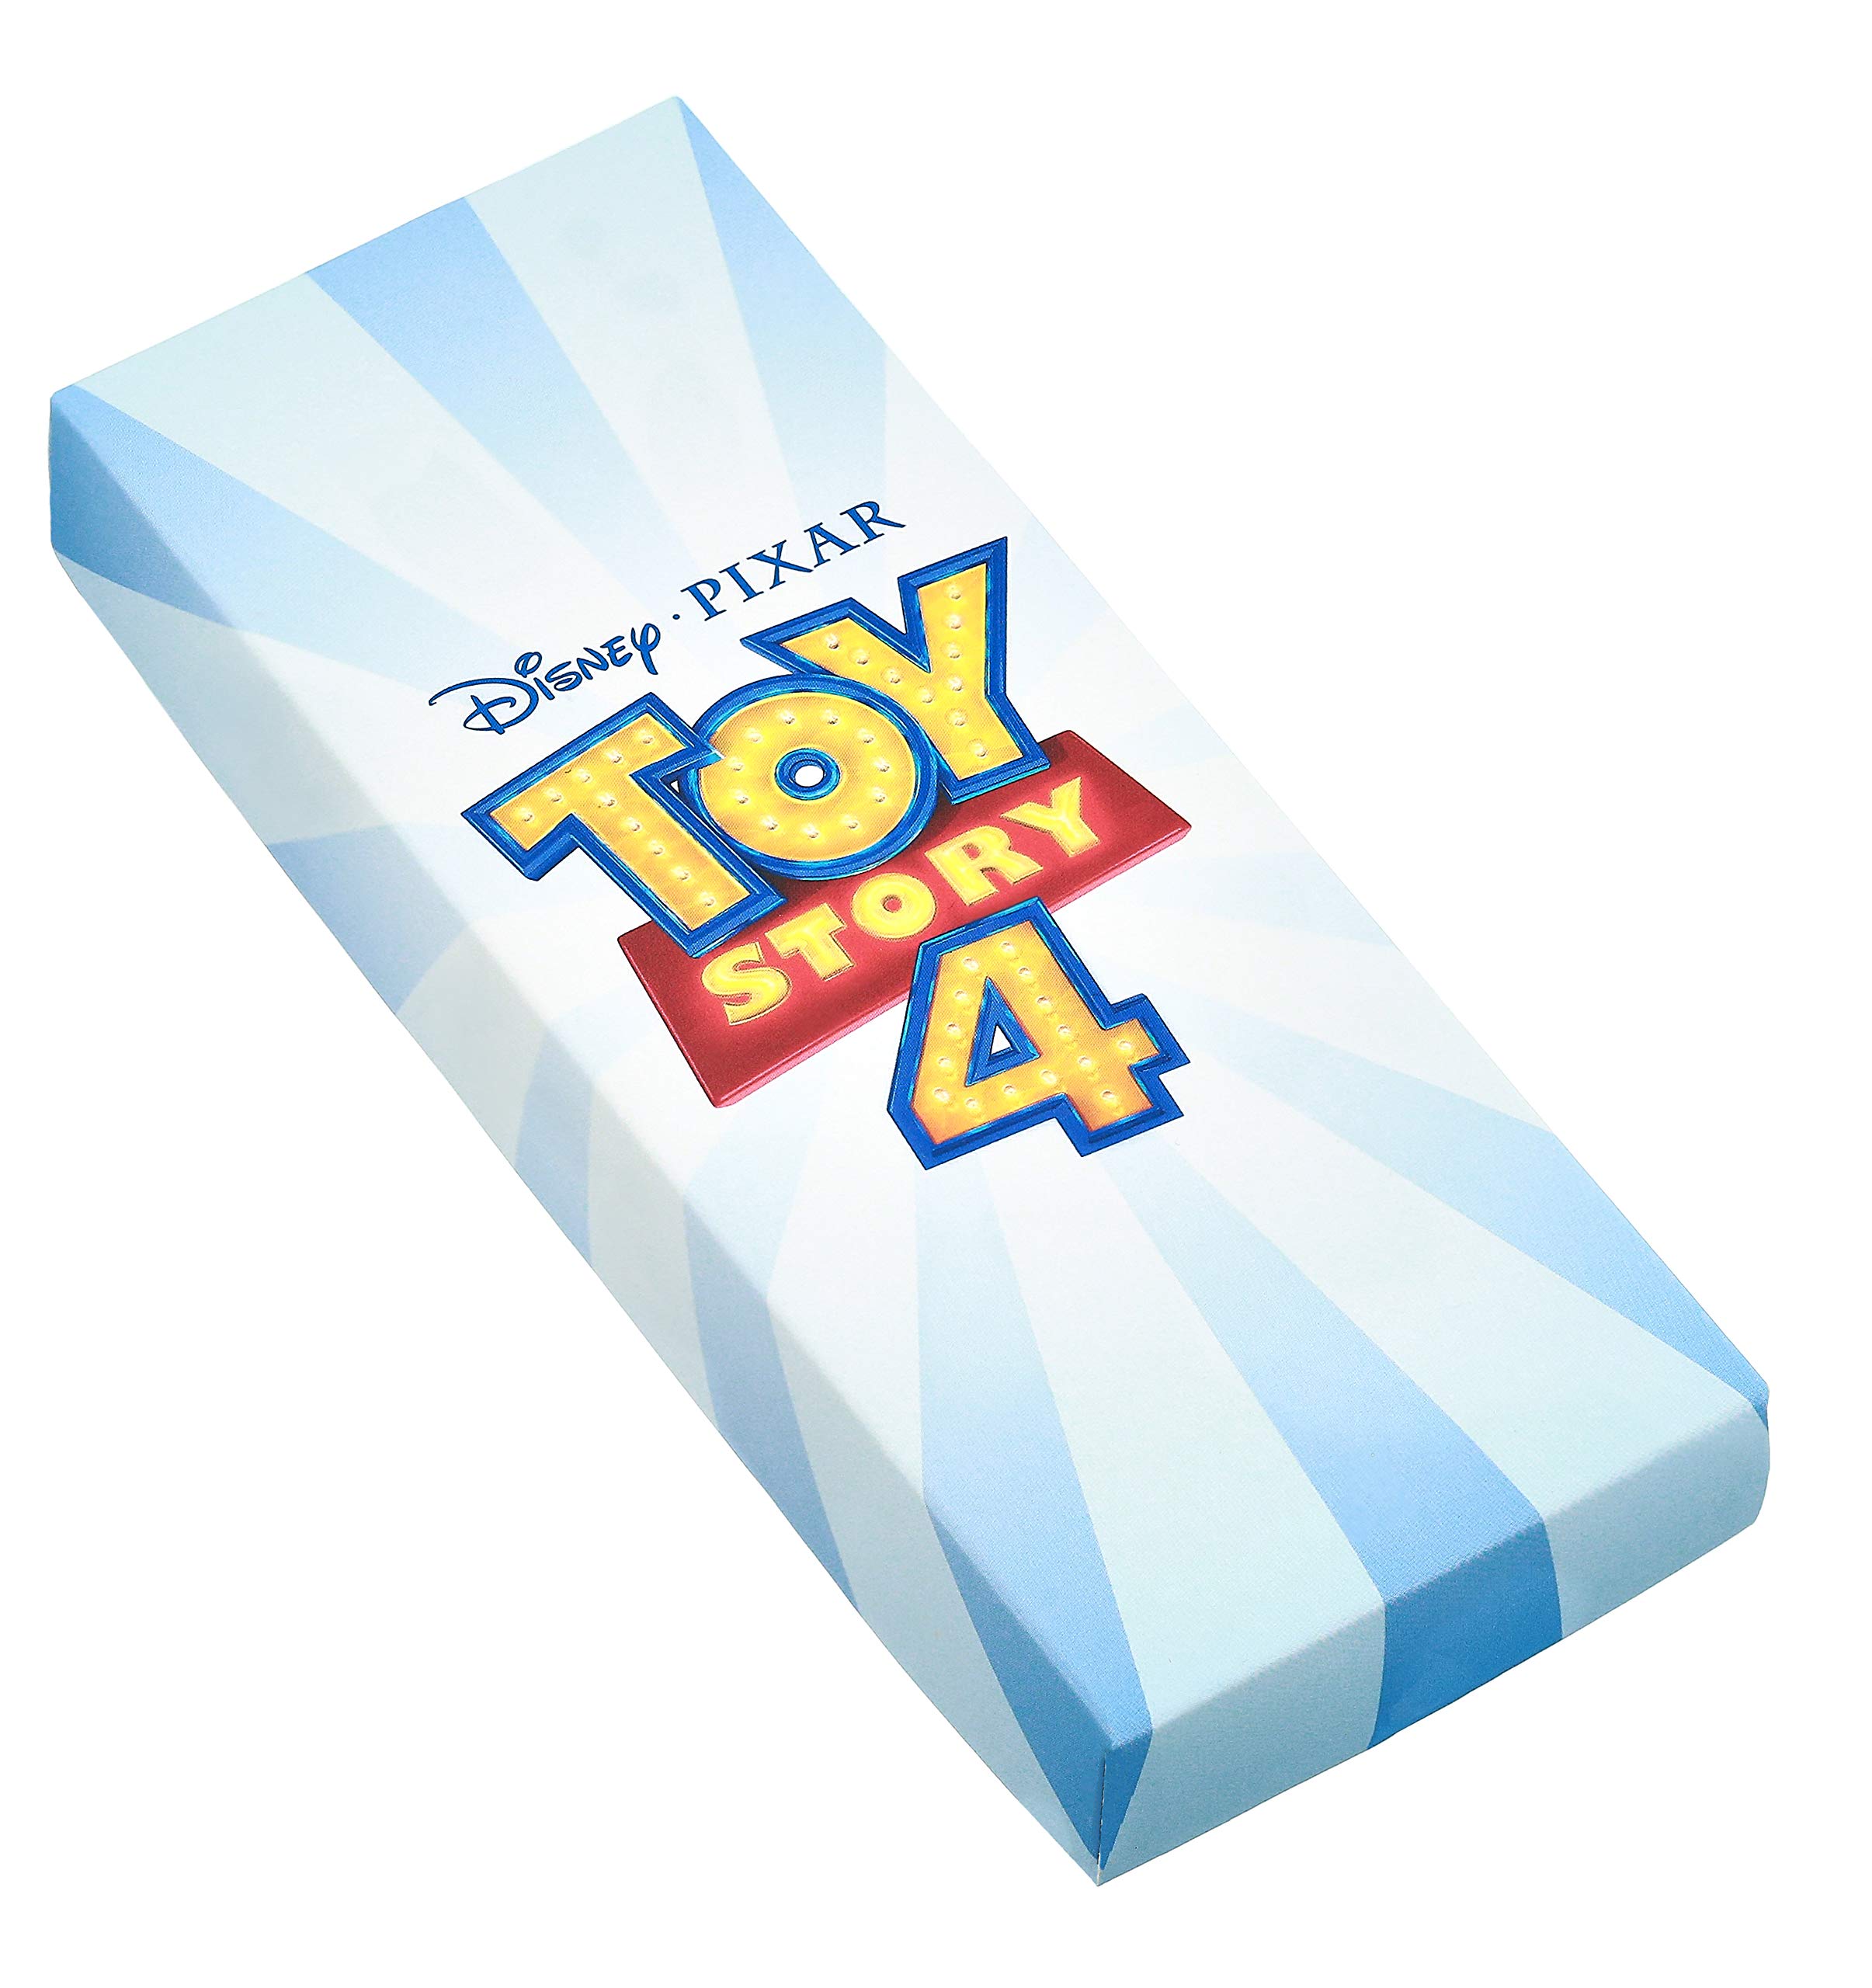 Disney Toy Story Kids' Plastic Time Teacher Analog Quartz Silicone Strap Watch